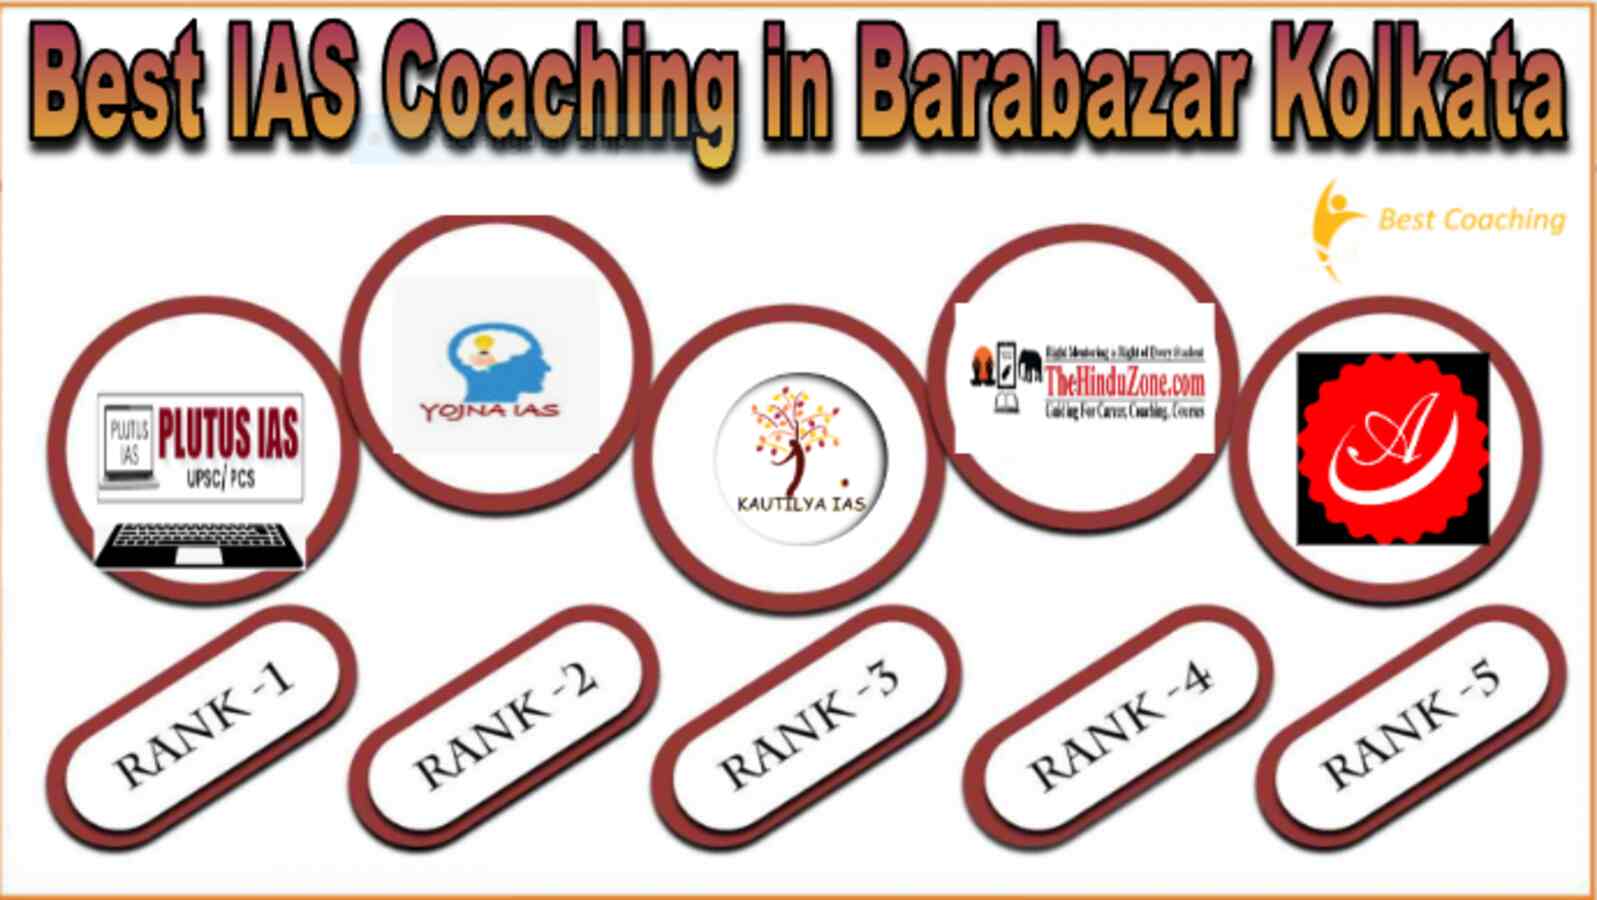 Best IAS coaching in Barabazar Kolkata